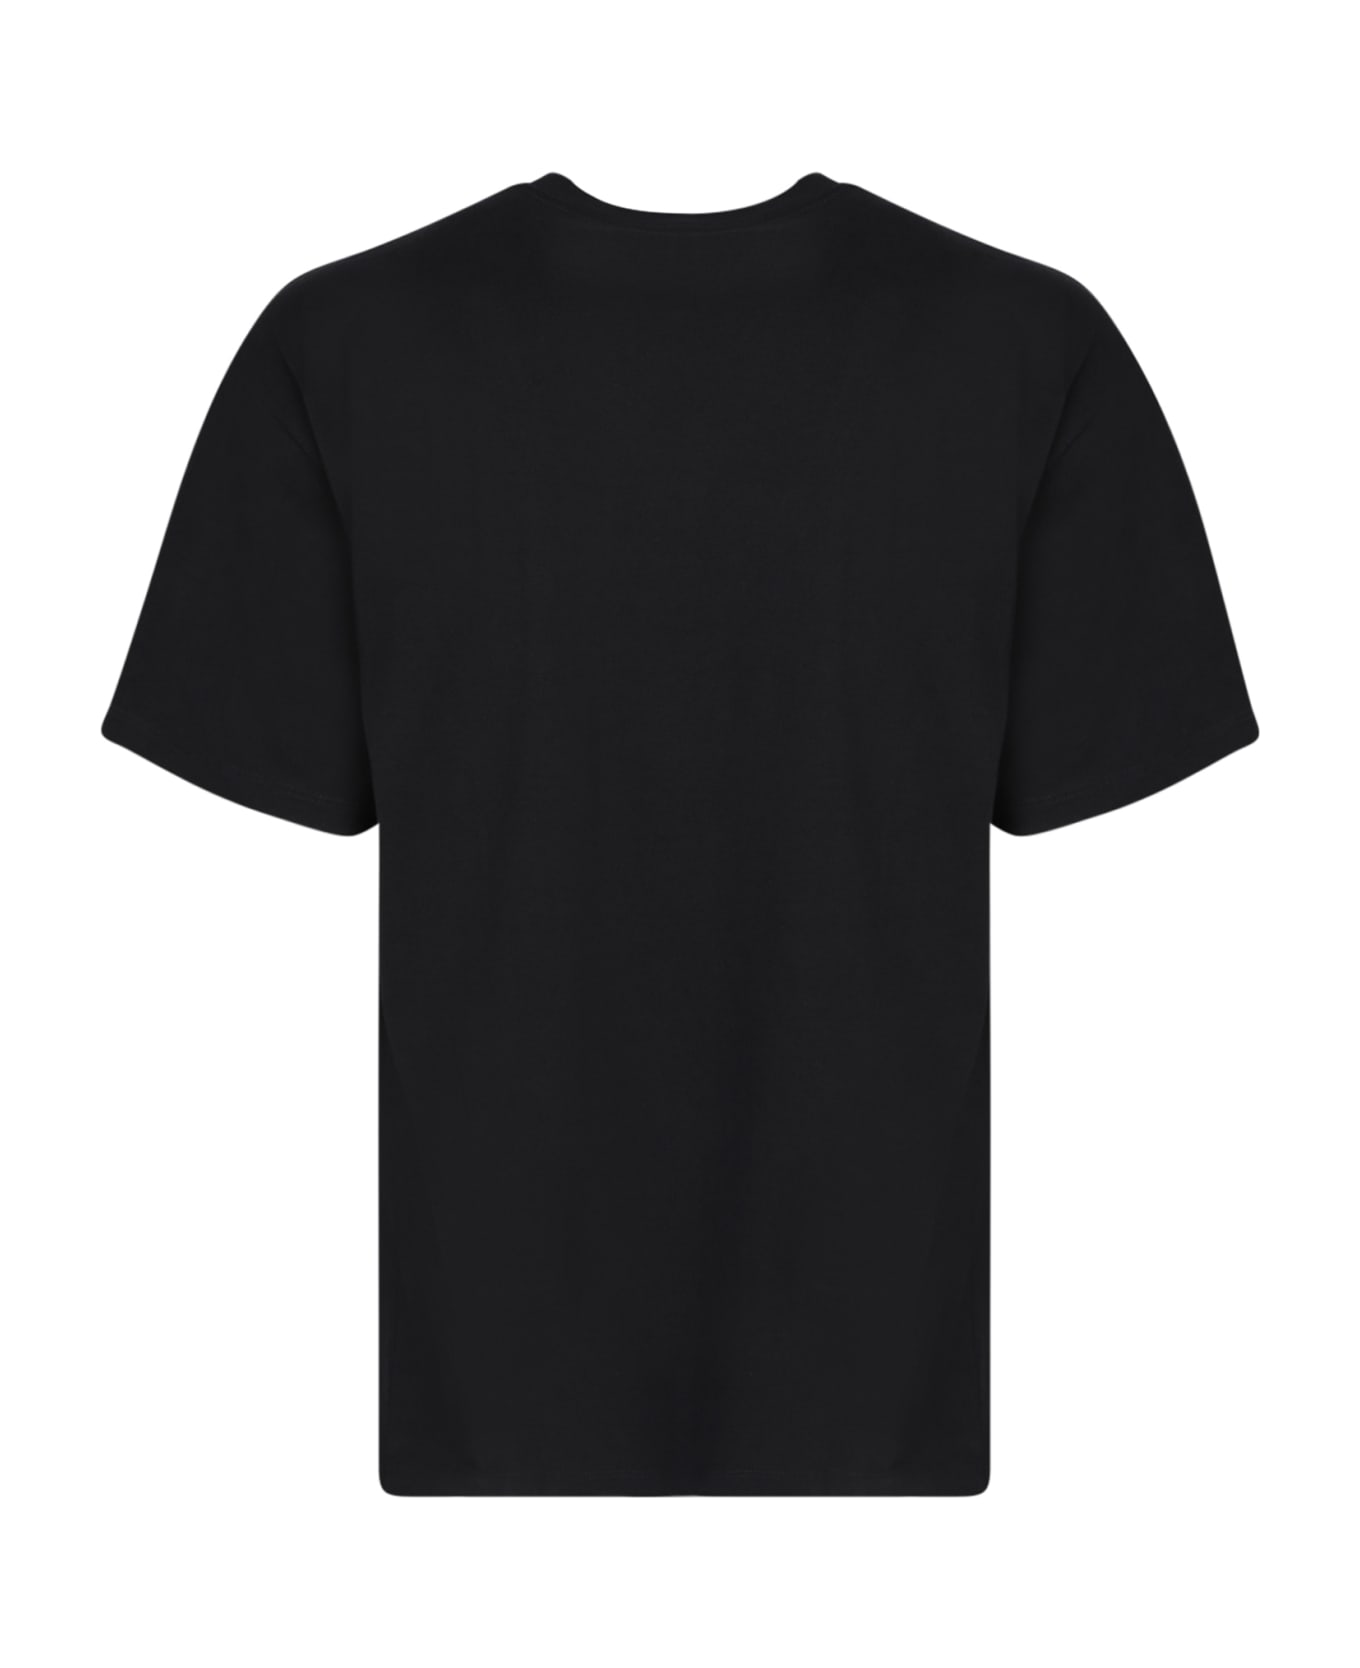 Aries No Problemo T-shirt Black - Black シャツ